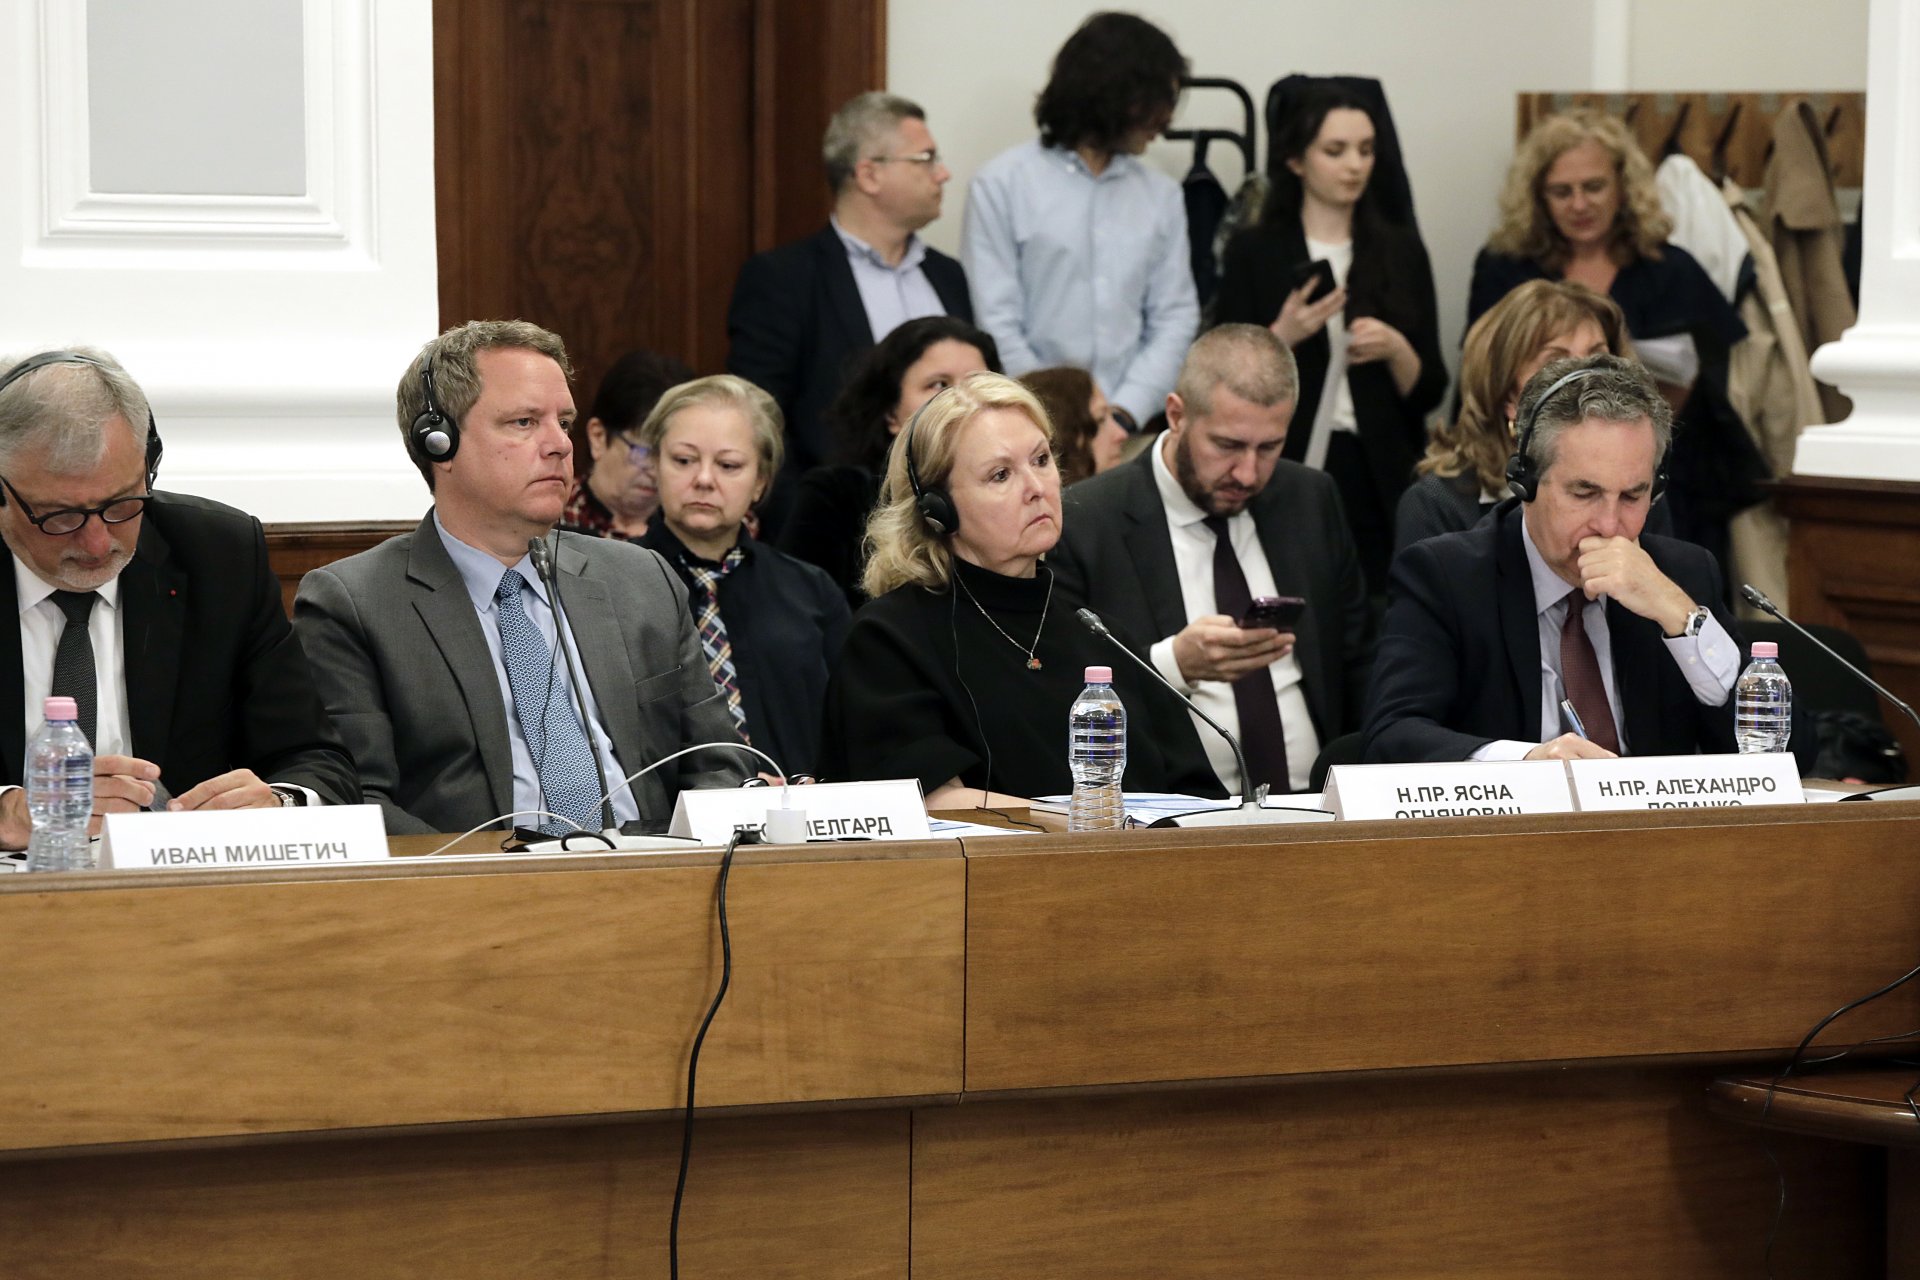 Посланикът на Хърватия в България Ясна Огняновац (в средата), посланикът на Испания Алехандро Поланко (дясно) по време на дискусията